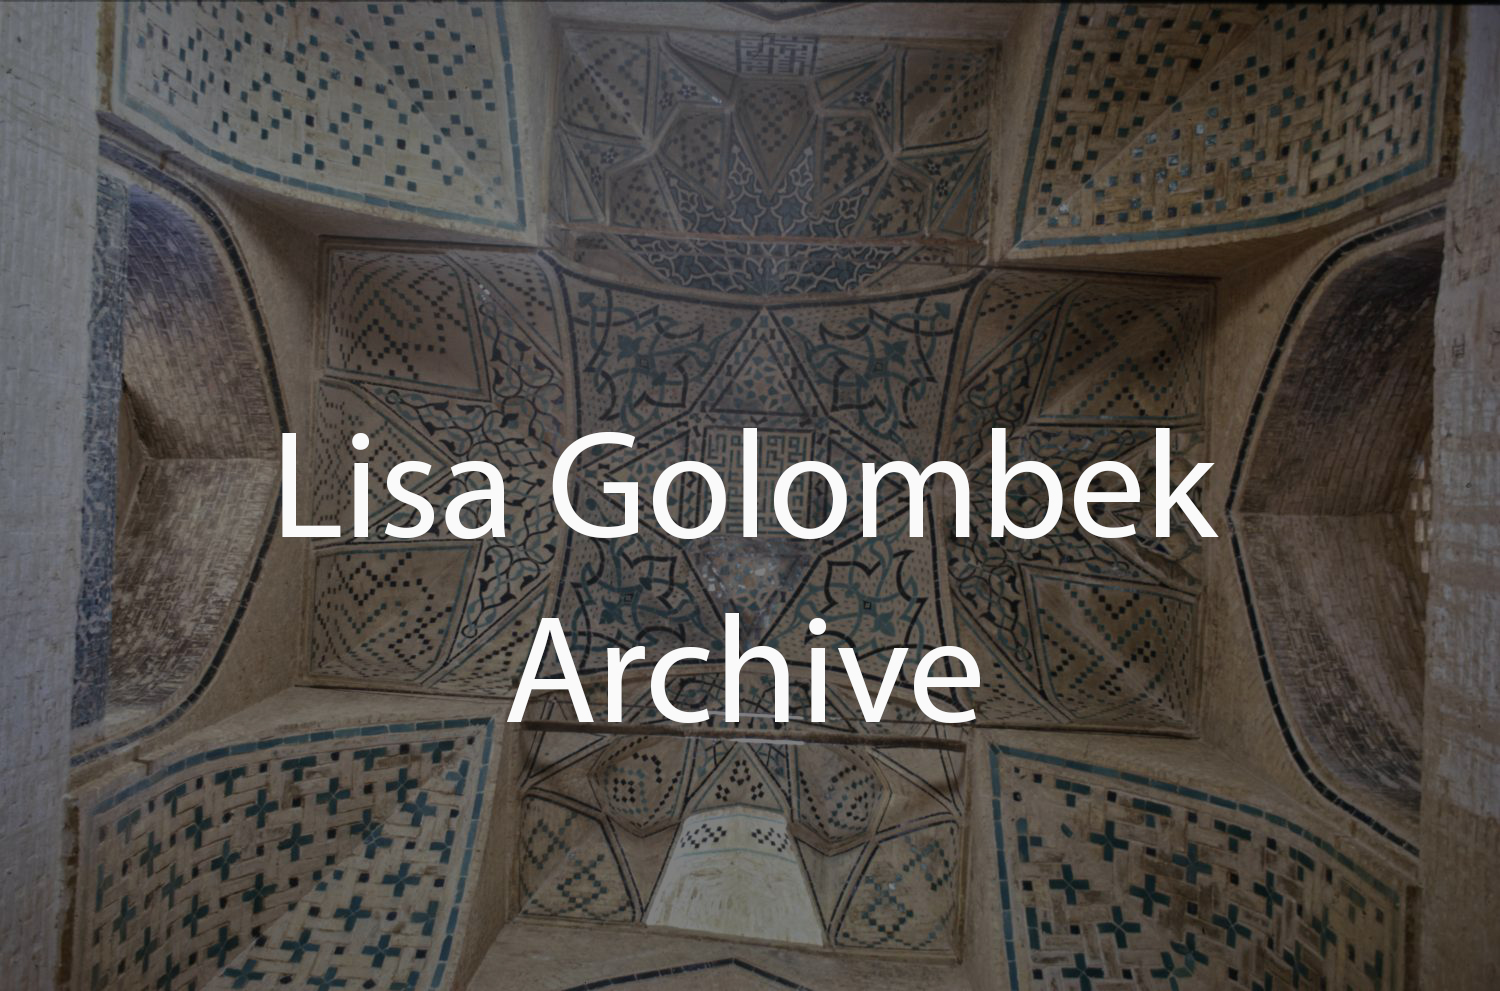 Lisa Golombek Archive